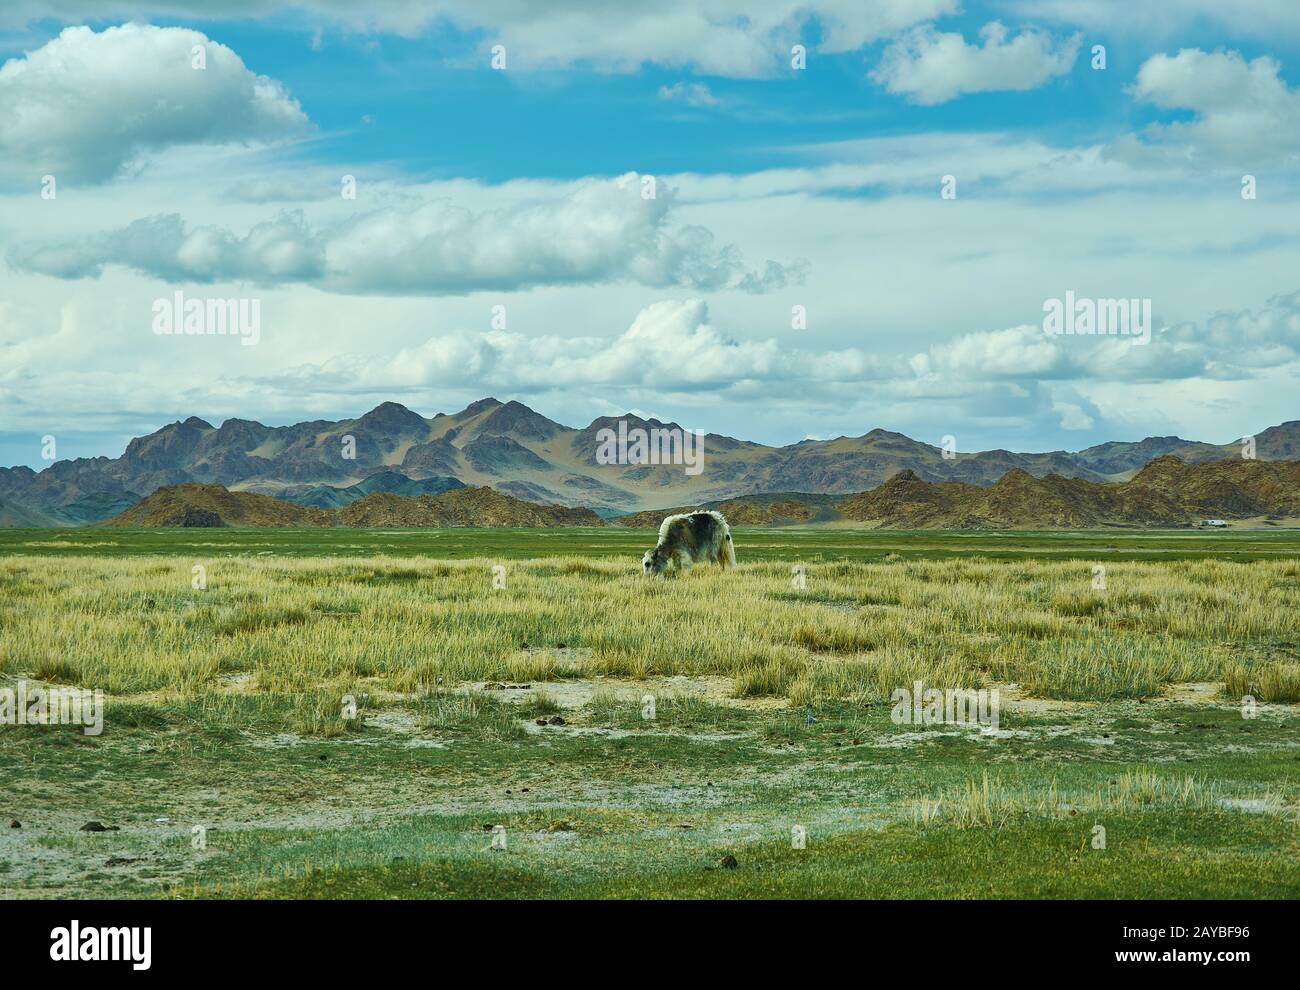 Dorbot passe d'Ulan-Baishint. Mongolie. Banque D'Images